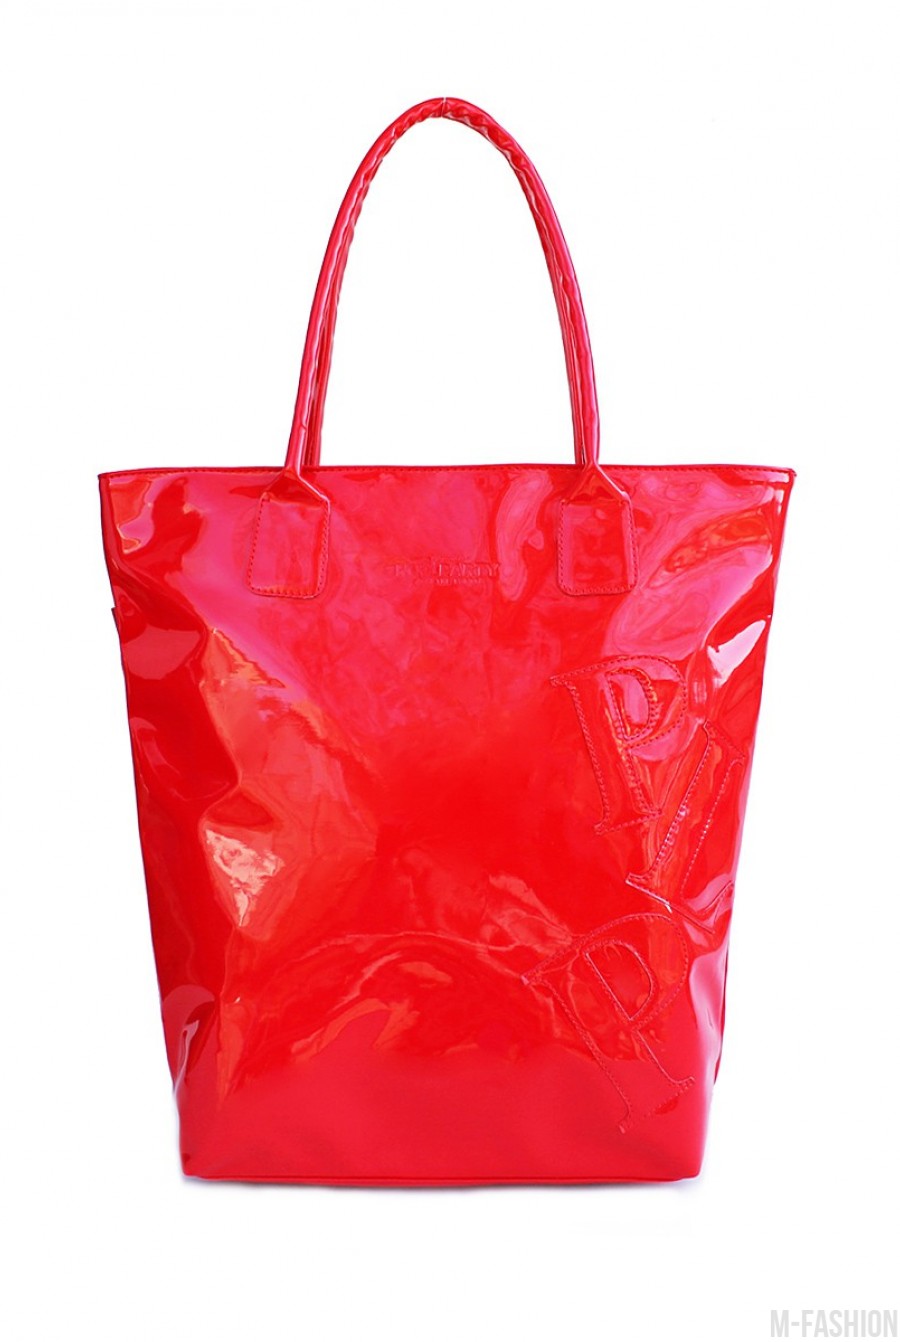 Лаковая красная сумка с вместительным отделением - Фото 1